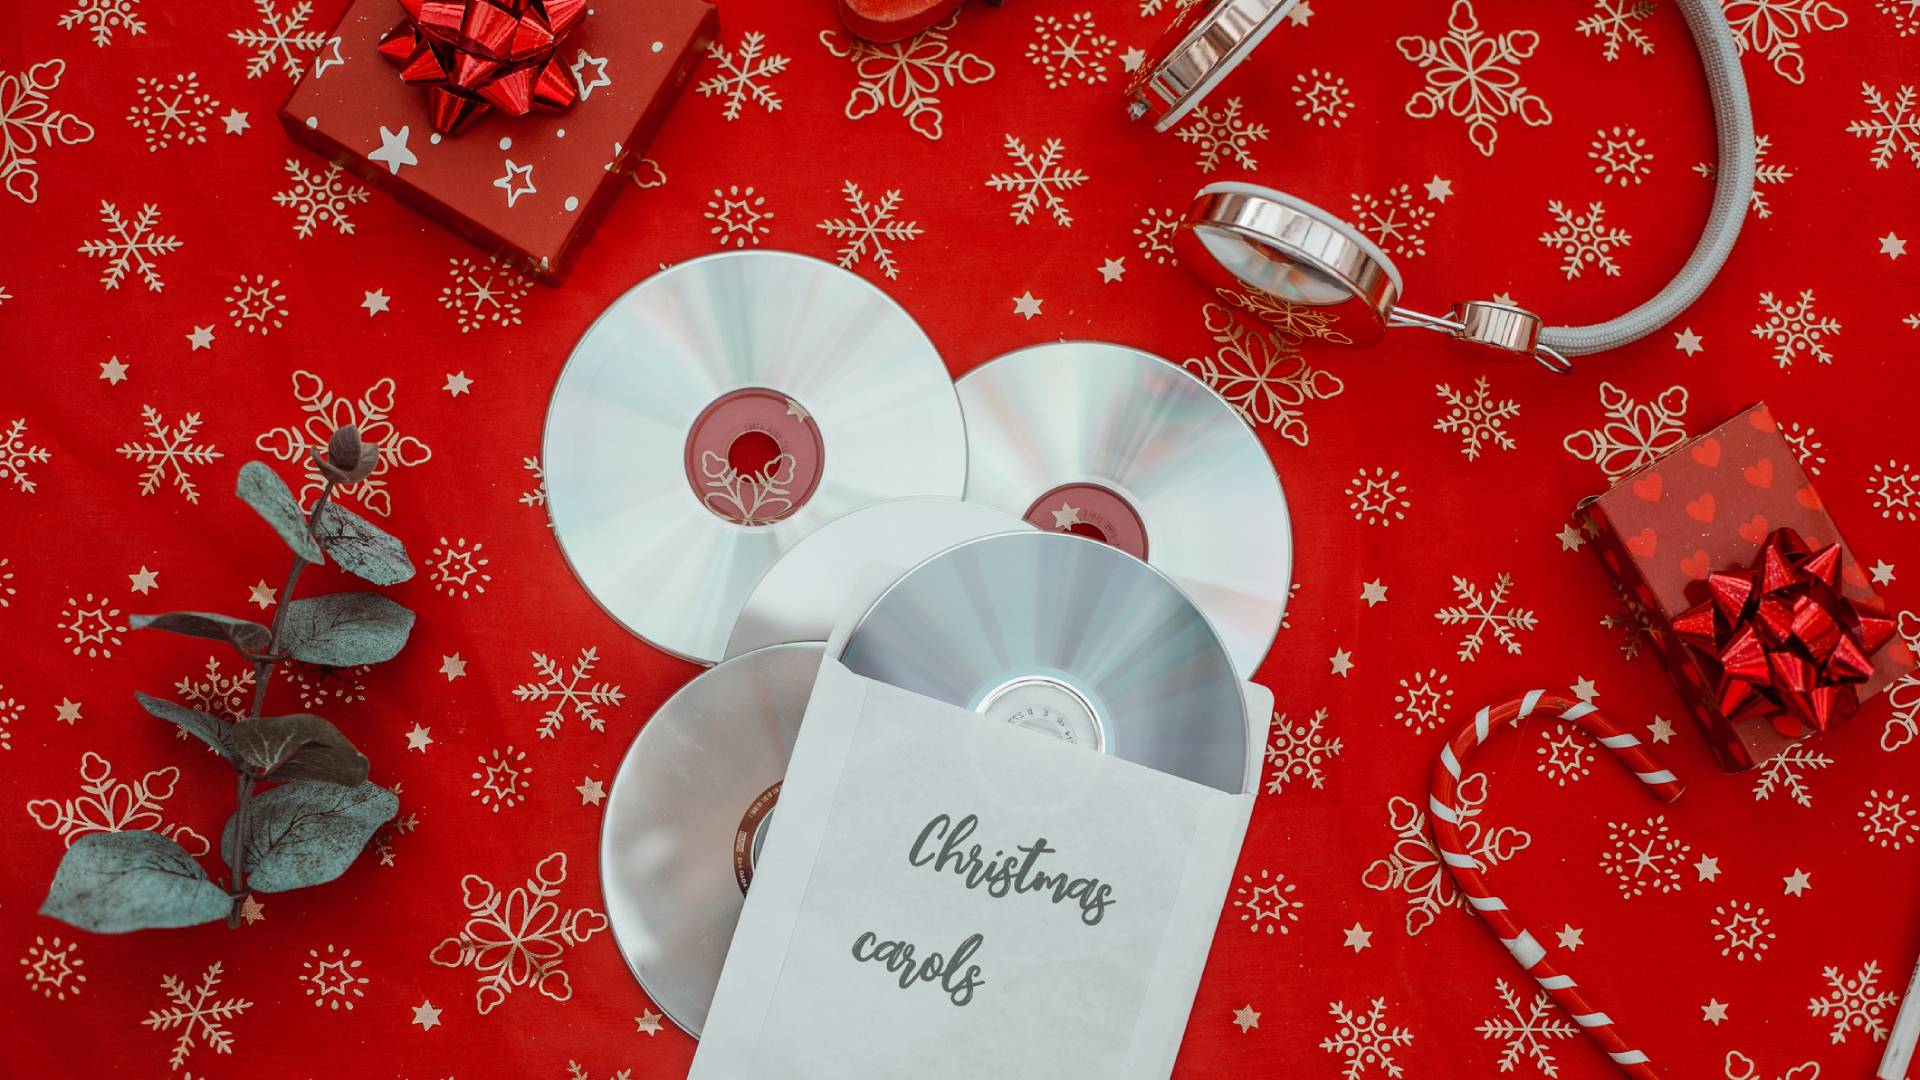 Piros terítőn CD karácsonyi dalokkal, ajándékkal, cukorrúddal és fejhallgatóval.